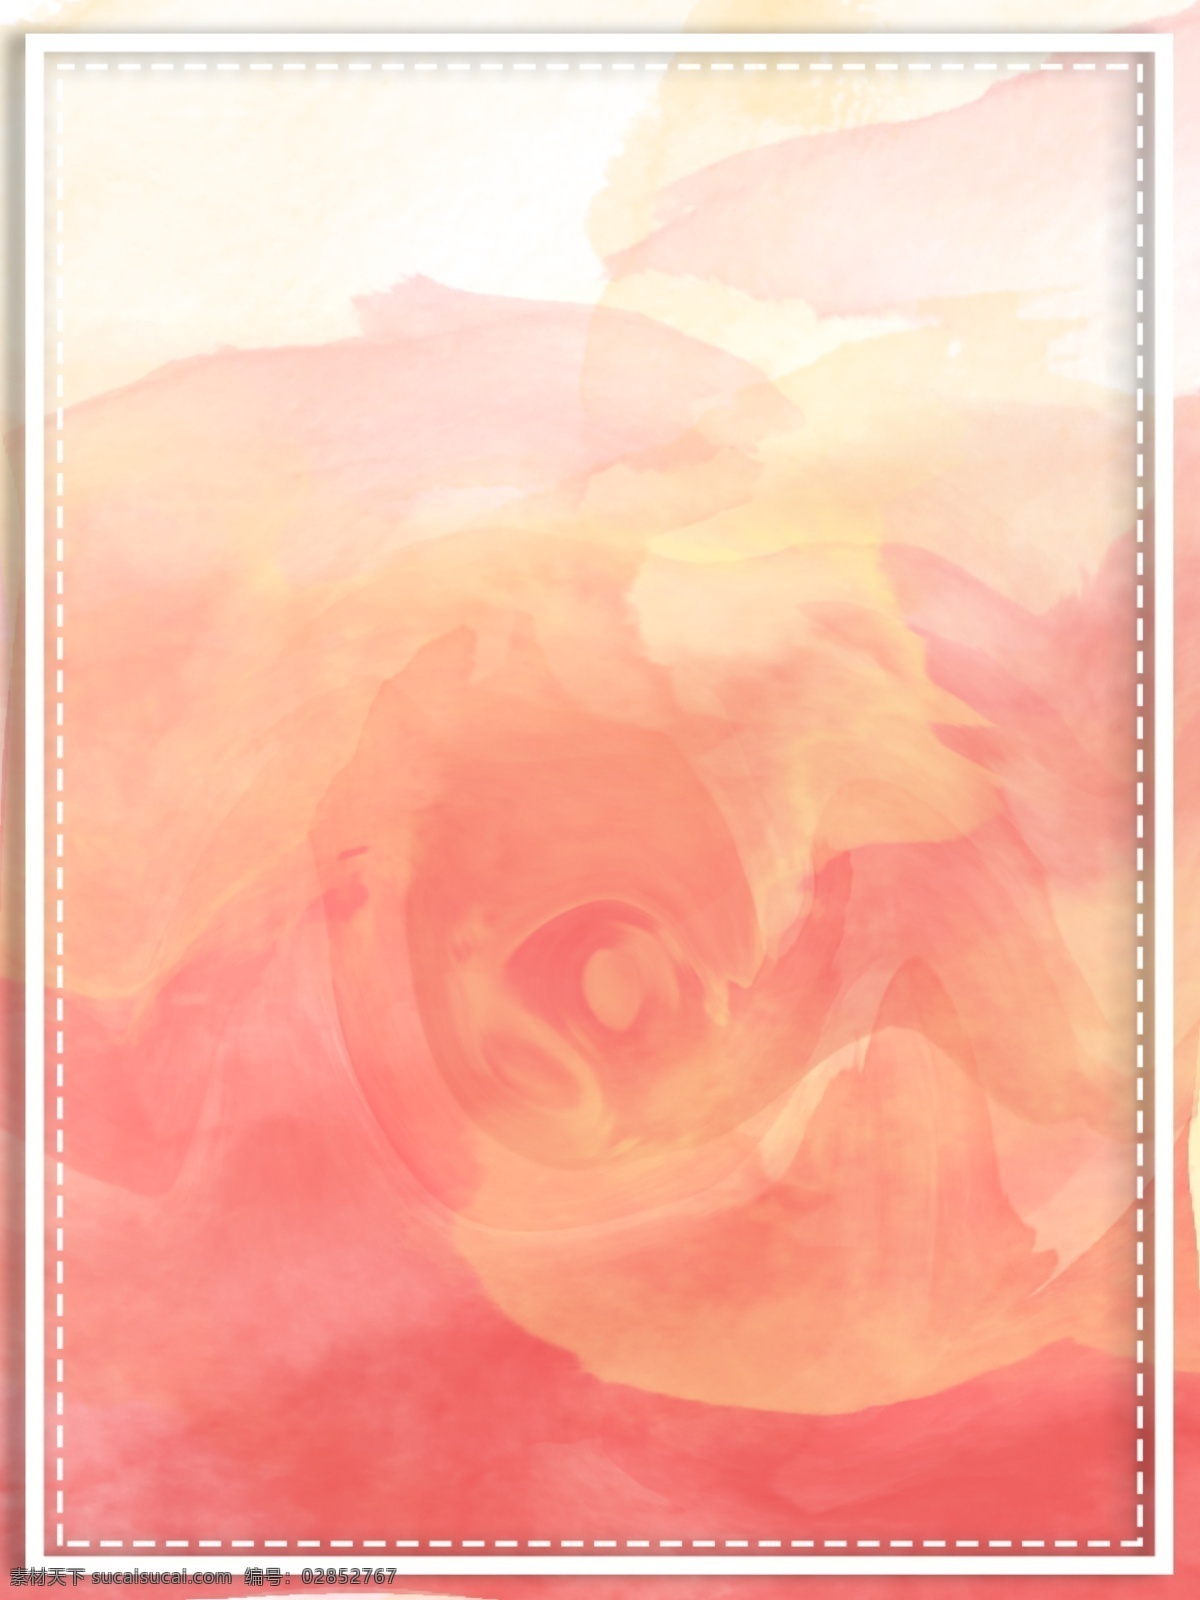 原创 小 清新 水彩 玫瑰 简约 背景 时尚 可爱 文艺 唯美 粉色 调皮